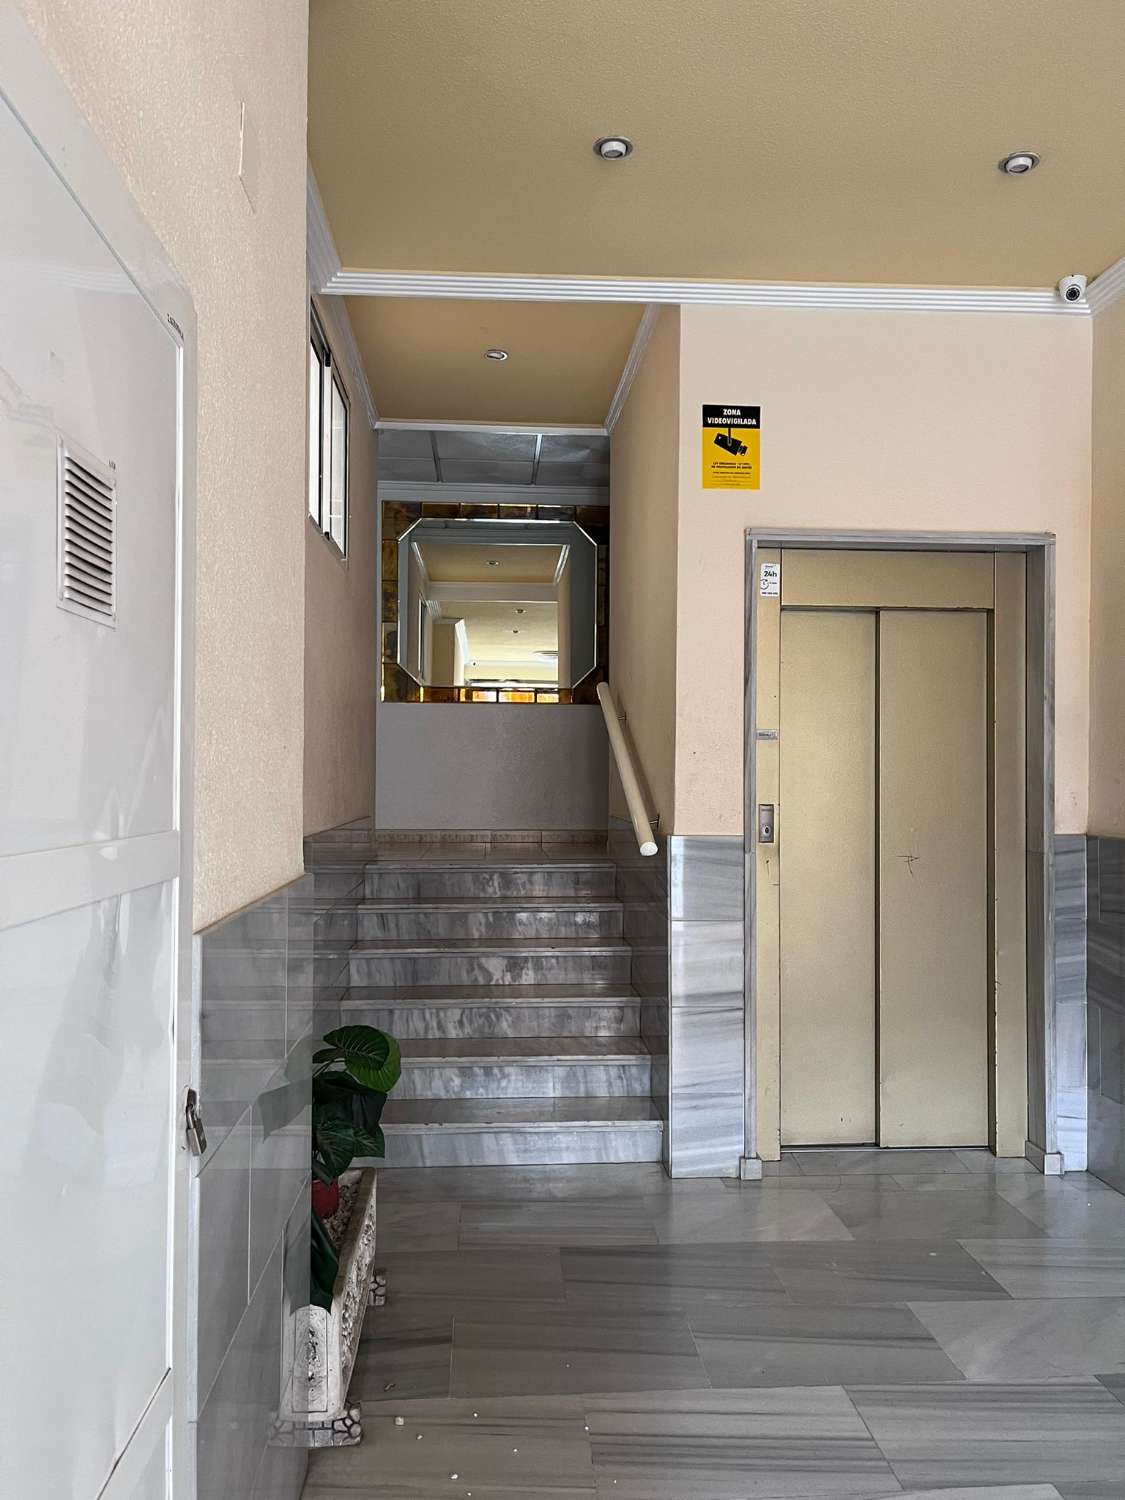 Appartement de 2 chambres avec piscine et prêt à emménager à Torrevieja (Costa Blanca Sud)